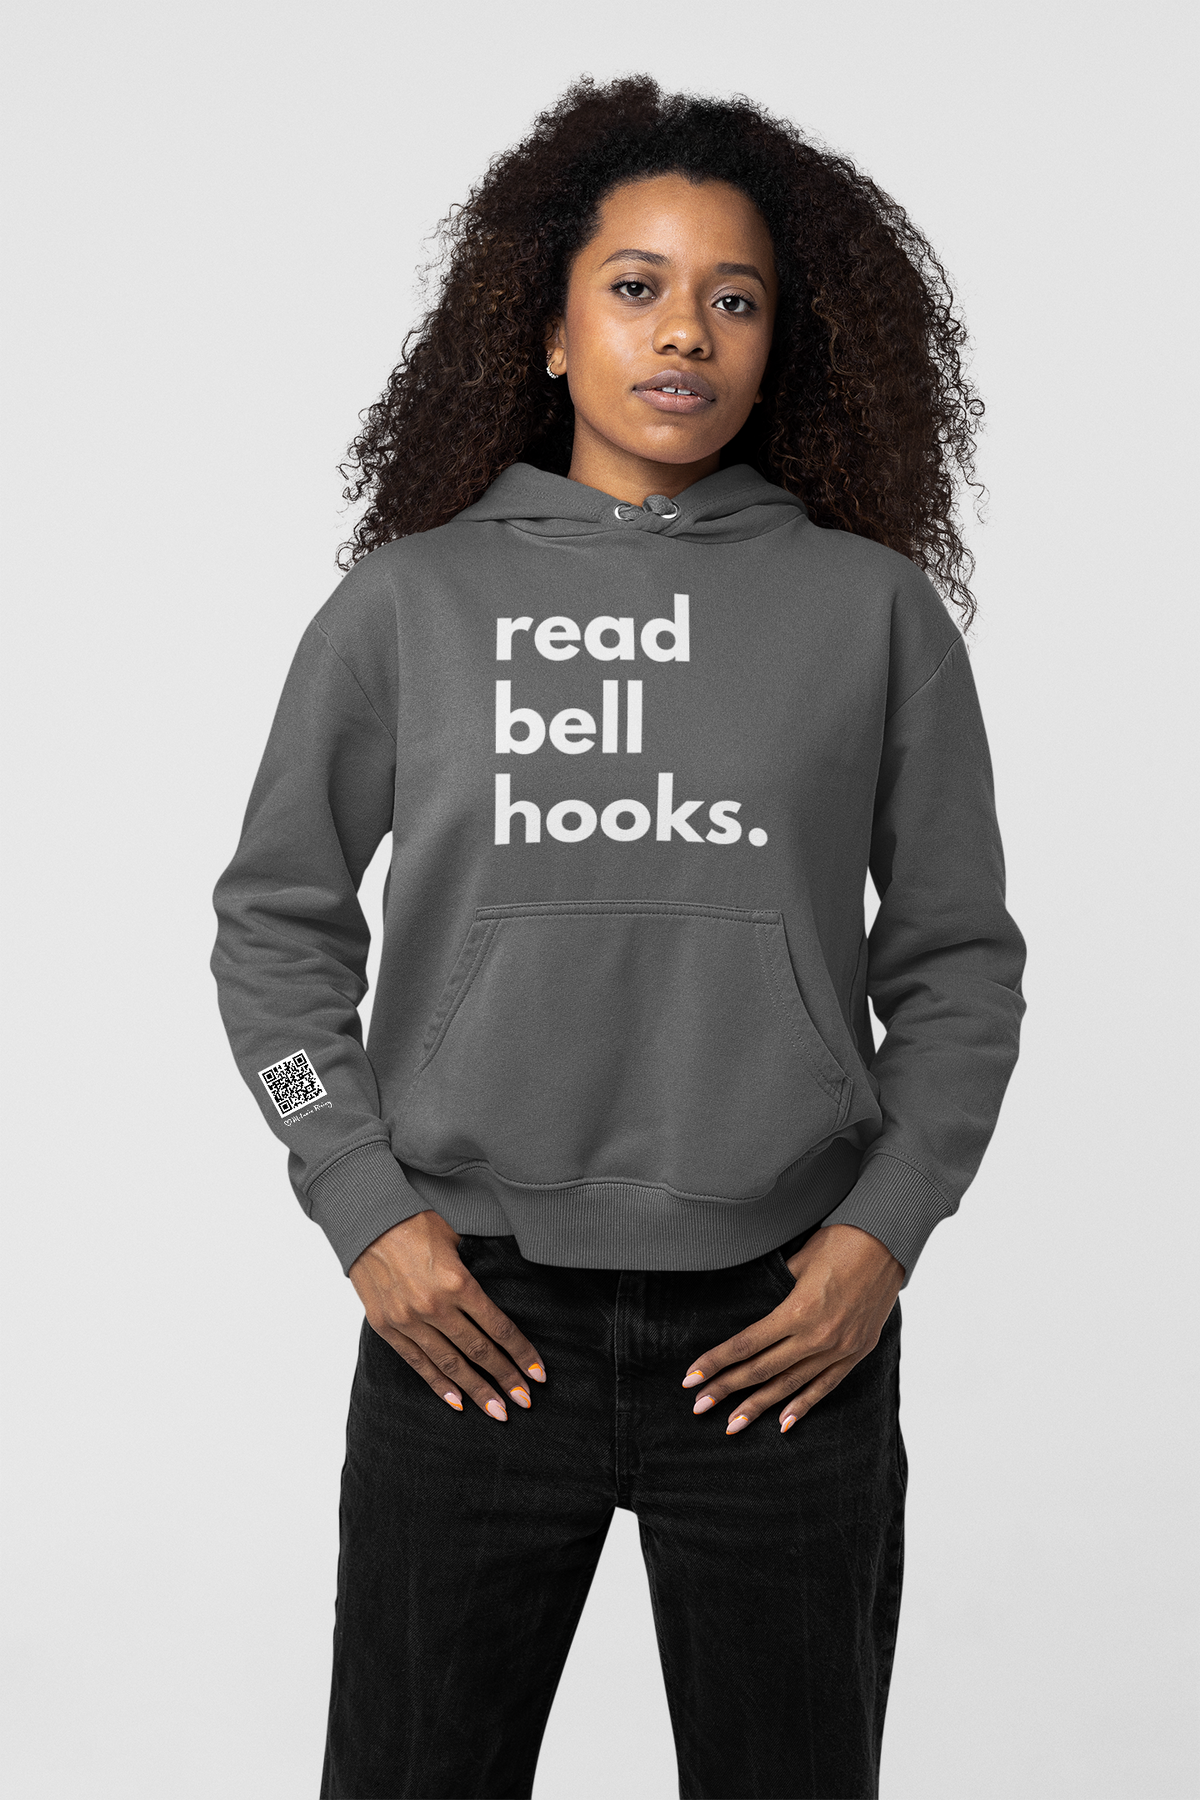 TECH ENABLED read bell hooks hoodie, gen 3